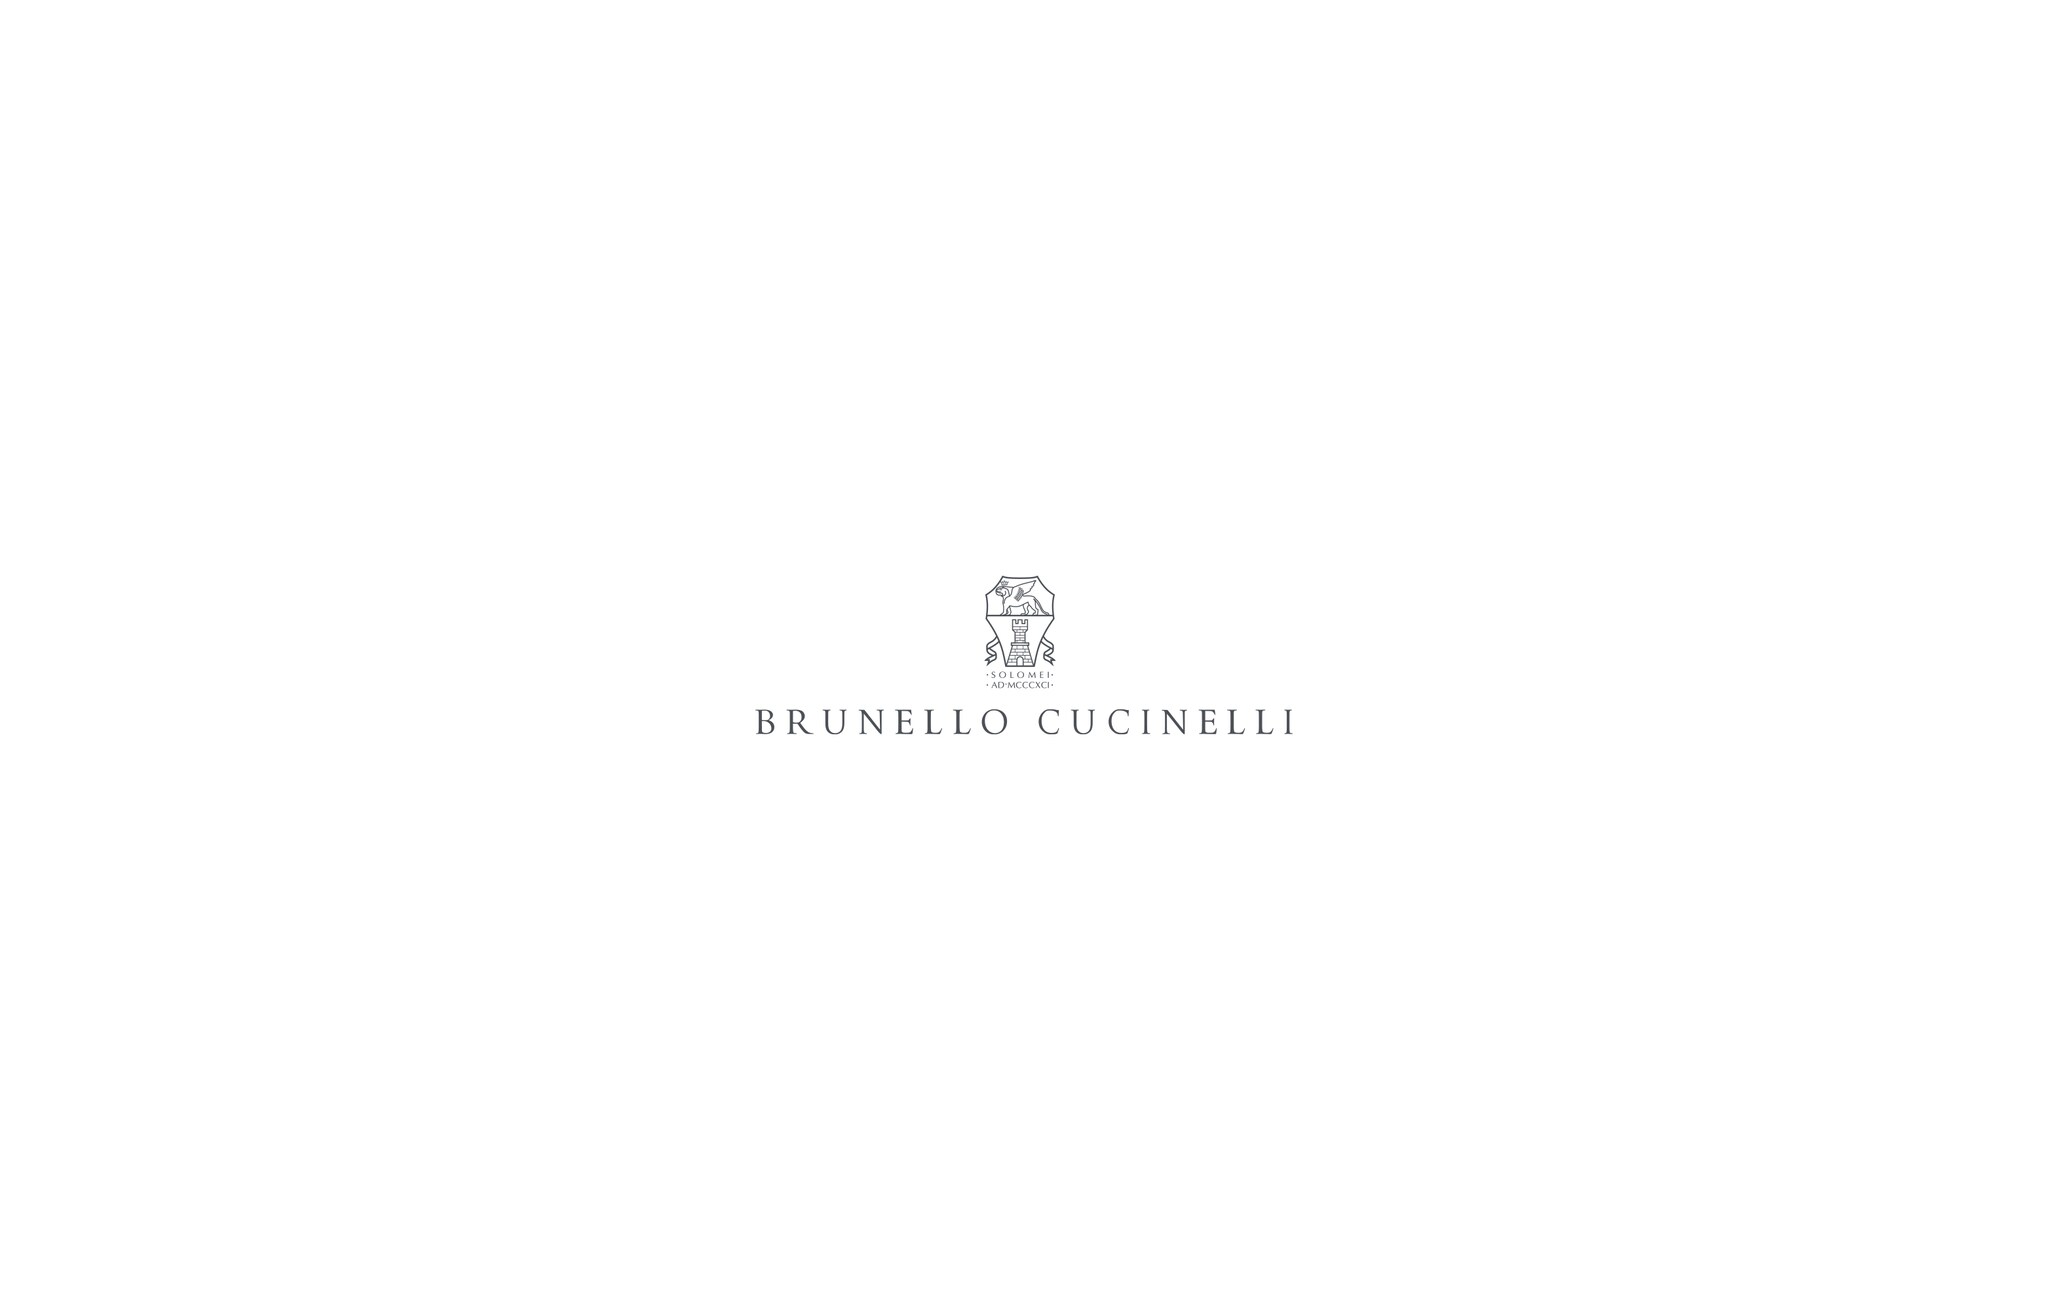  Utility trousers Green Bottle Woman - Brunello Cucinelli 